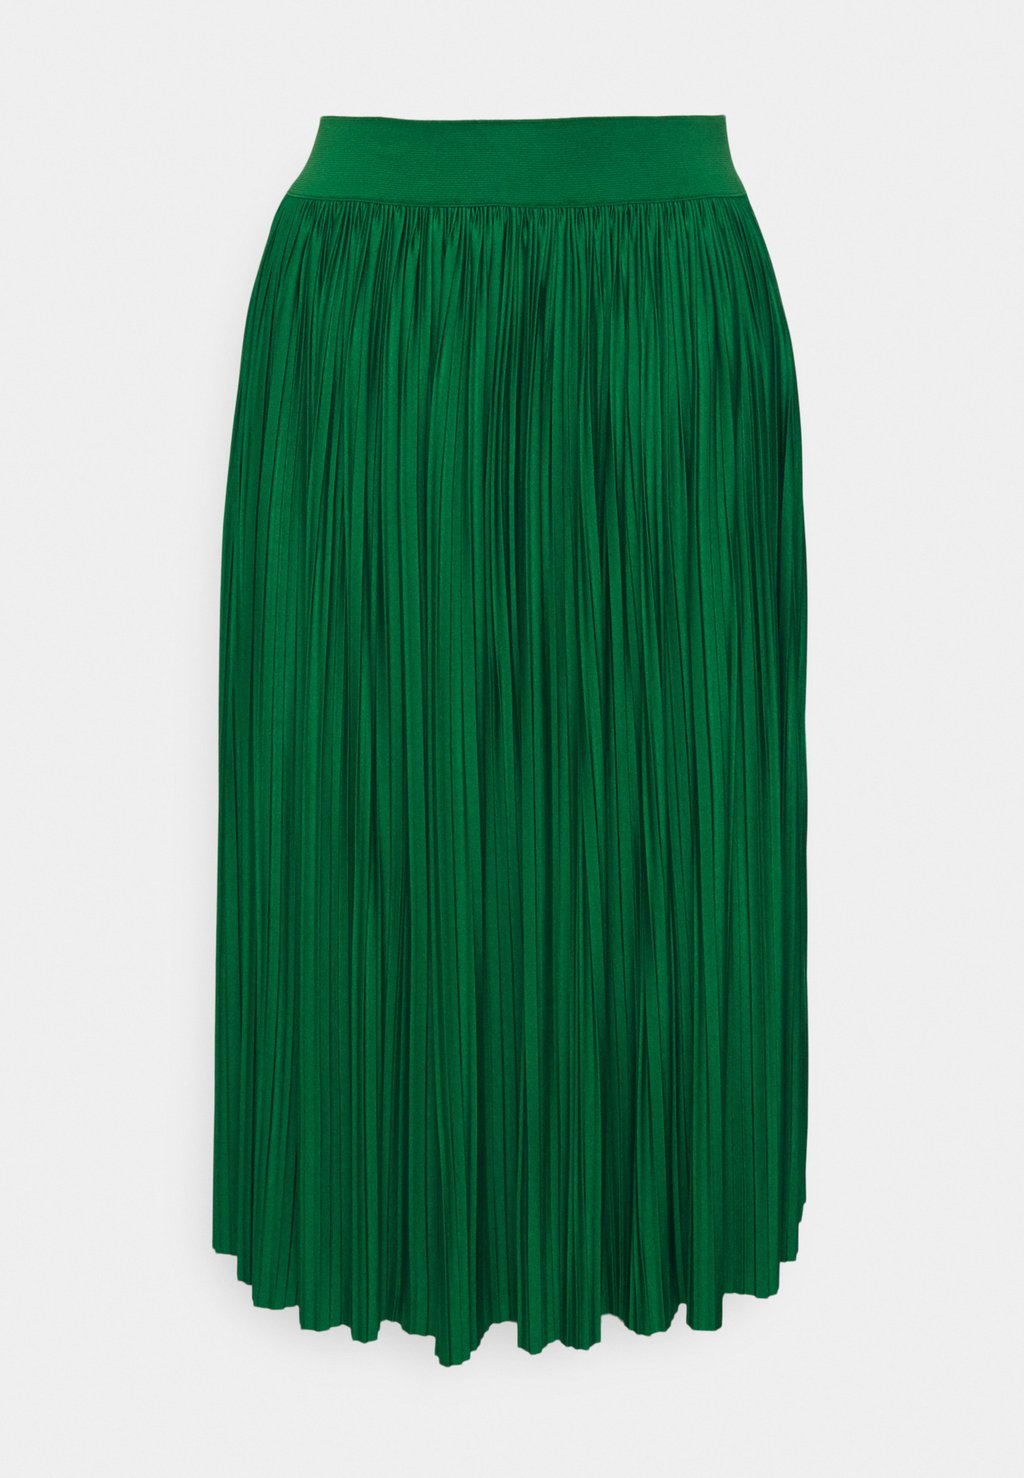 Юбка плиссе Zign, зеленый юбка плиссе классического кроя 26014363 зеленый 44